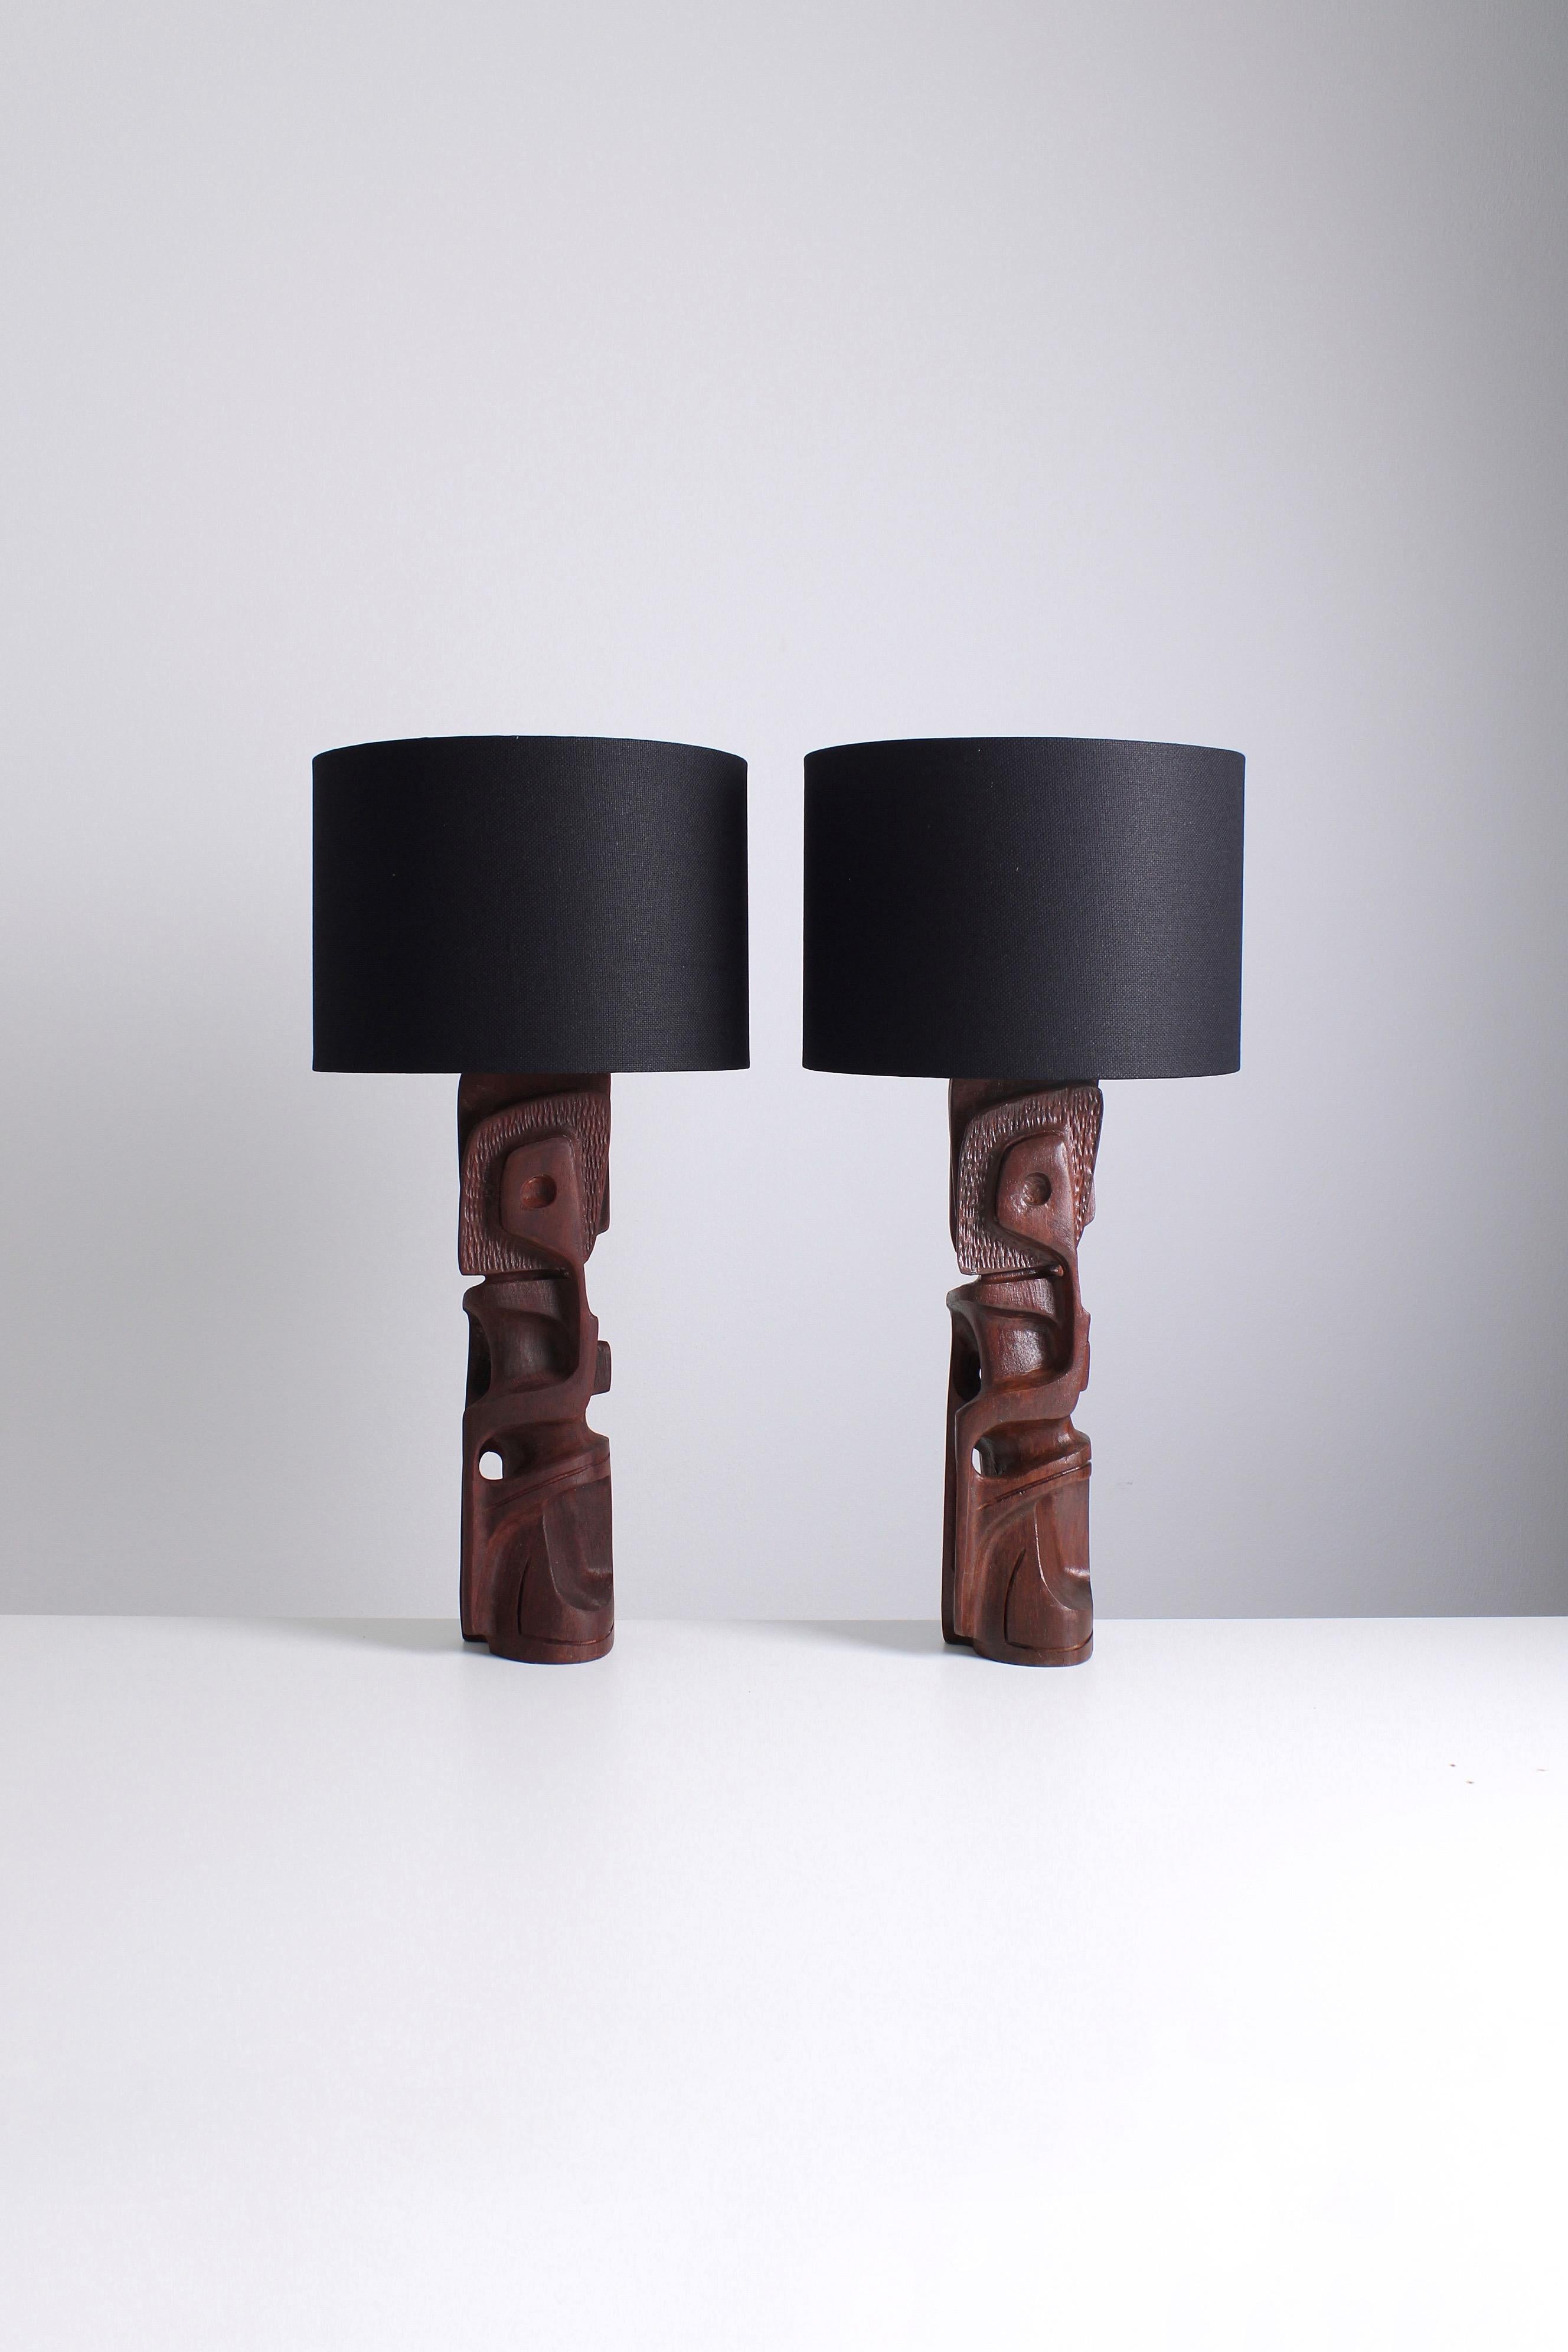 Eine Reihe von skulpturalen Tischlampen, die Gianni Pinna in den 1970er Jahren entworfen hat. Die aus Legno Padouk-Holz gefertigten Lampen strahlen eine robuste und brutalistische Ästhetik aus. Es ist erwähnenswert, dass beide Lampen zwar ein